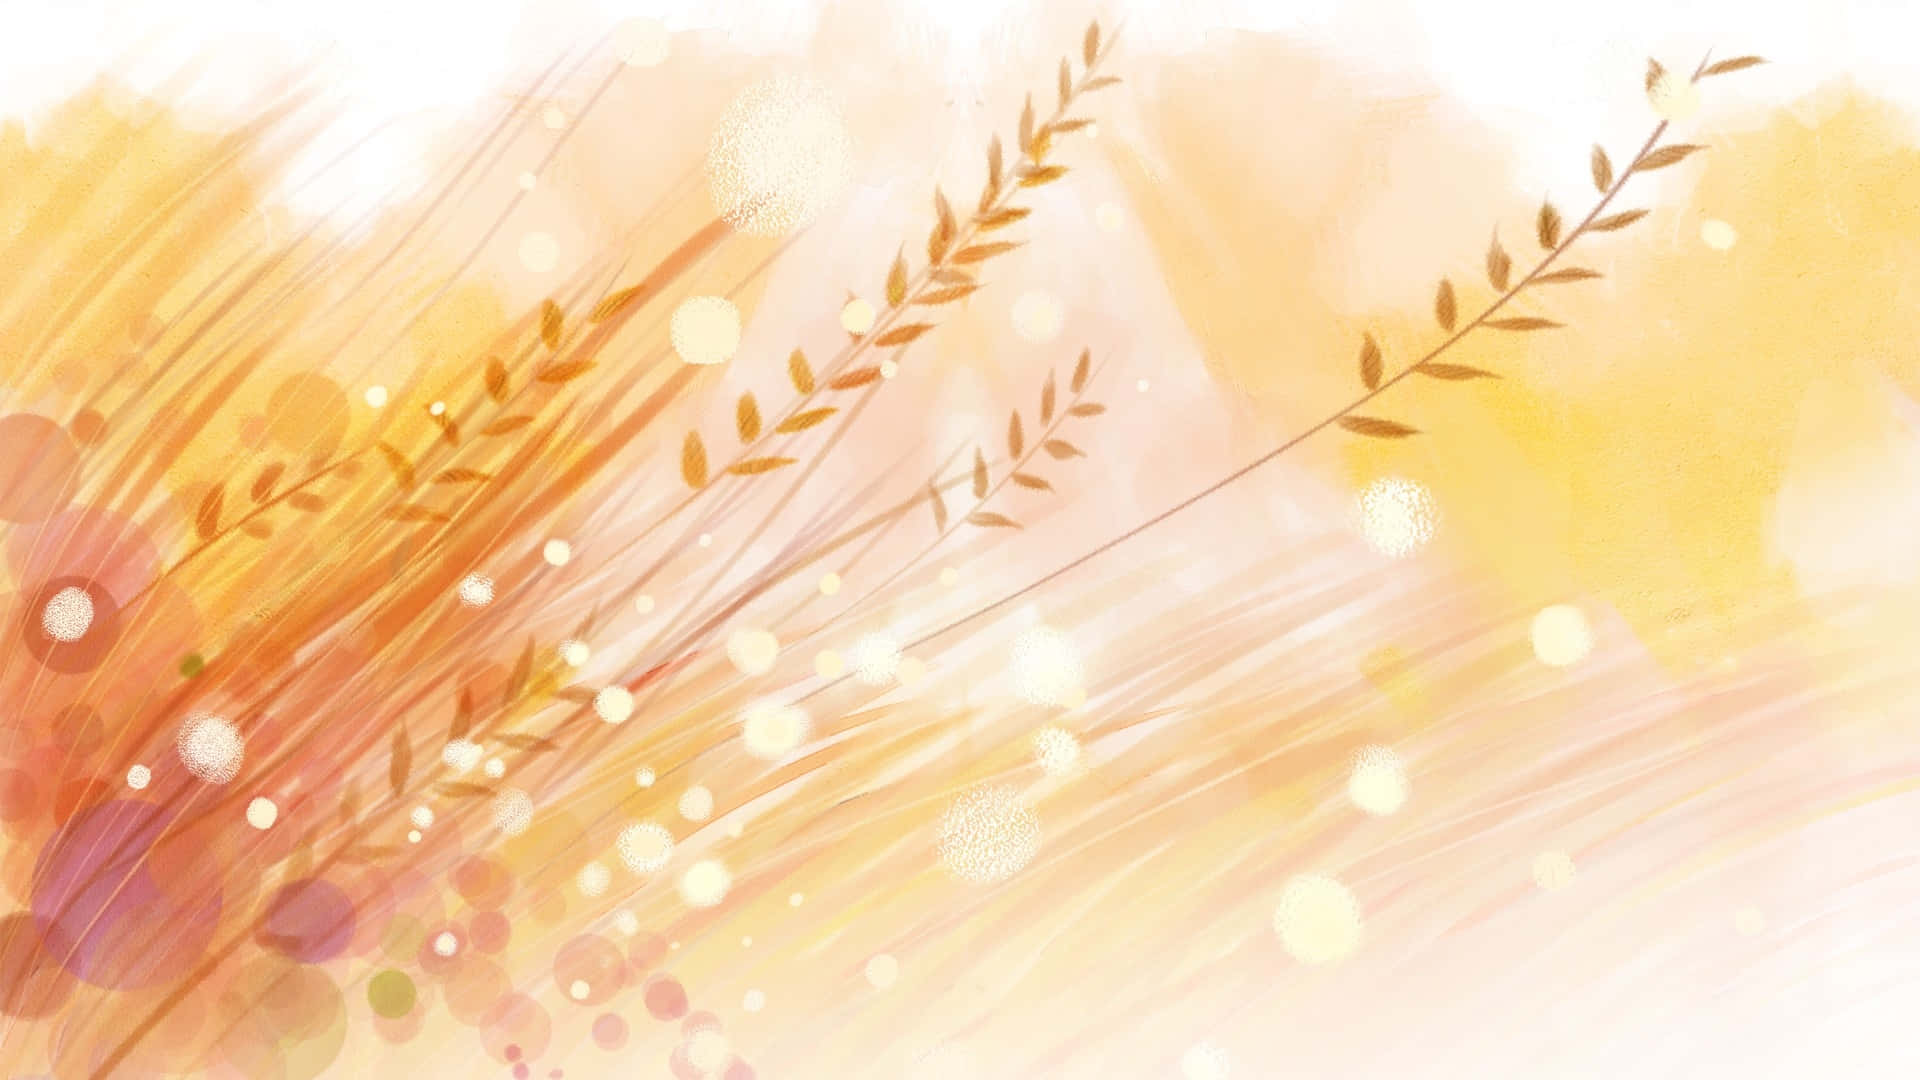 Golden Wheat Harvest at Sunset Wallpaper